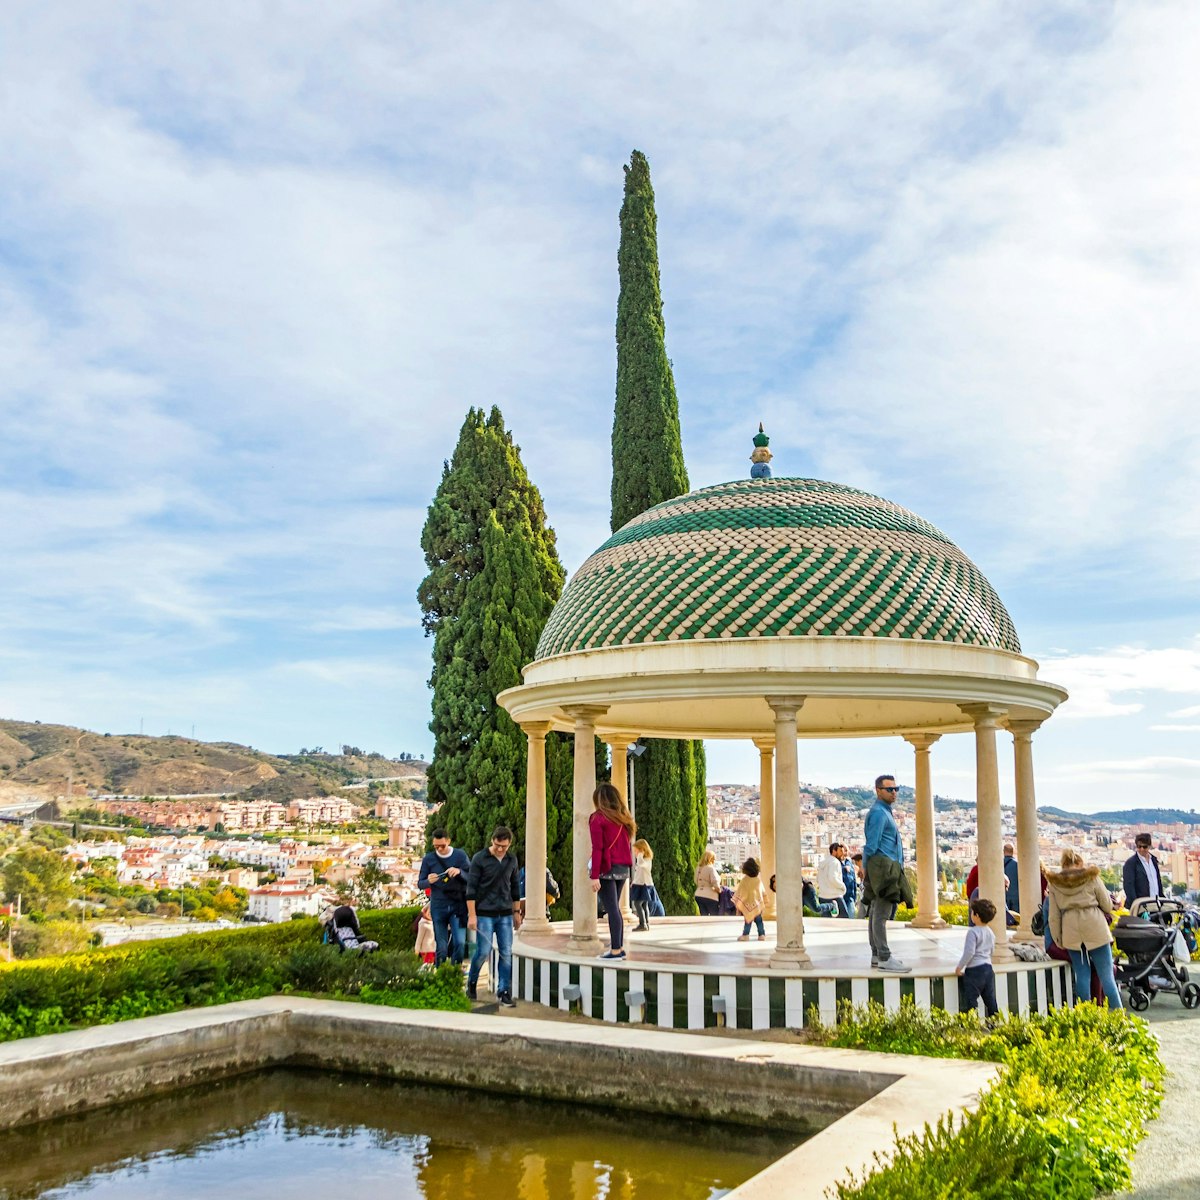 Historic viewpoint in Jardin Botanico La Concepcion in Malaga. 
